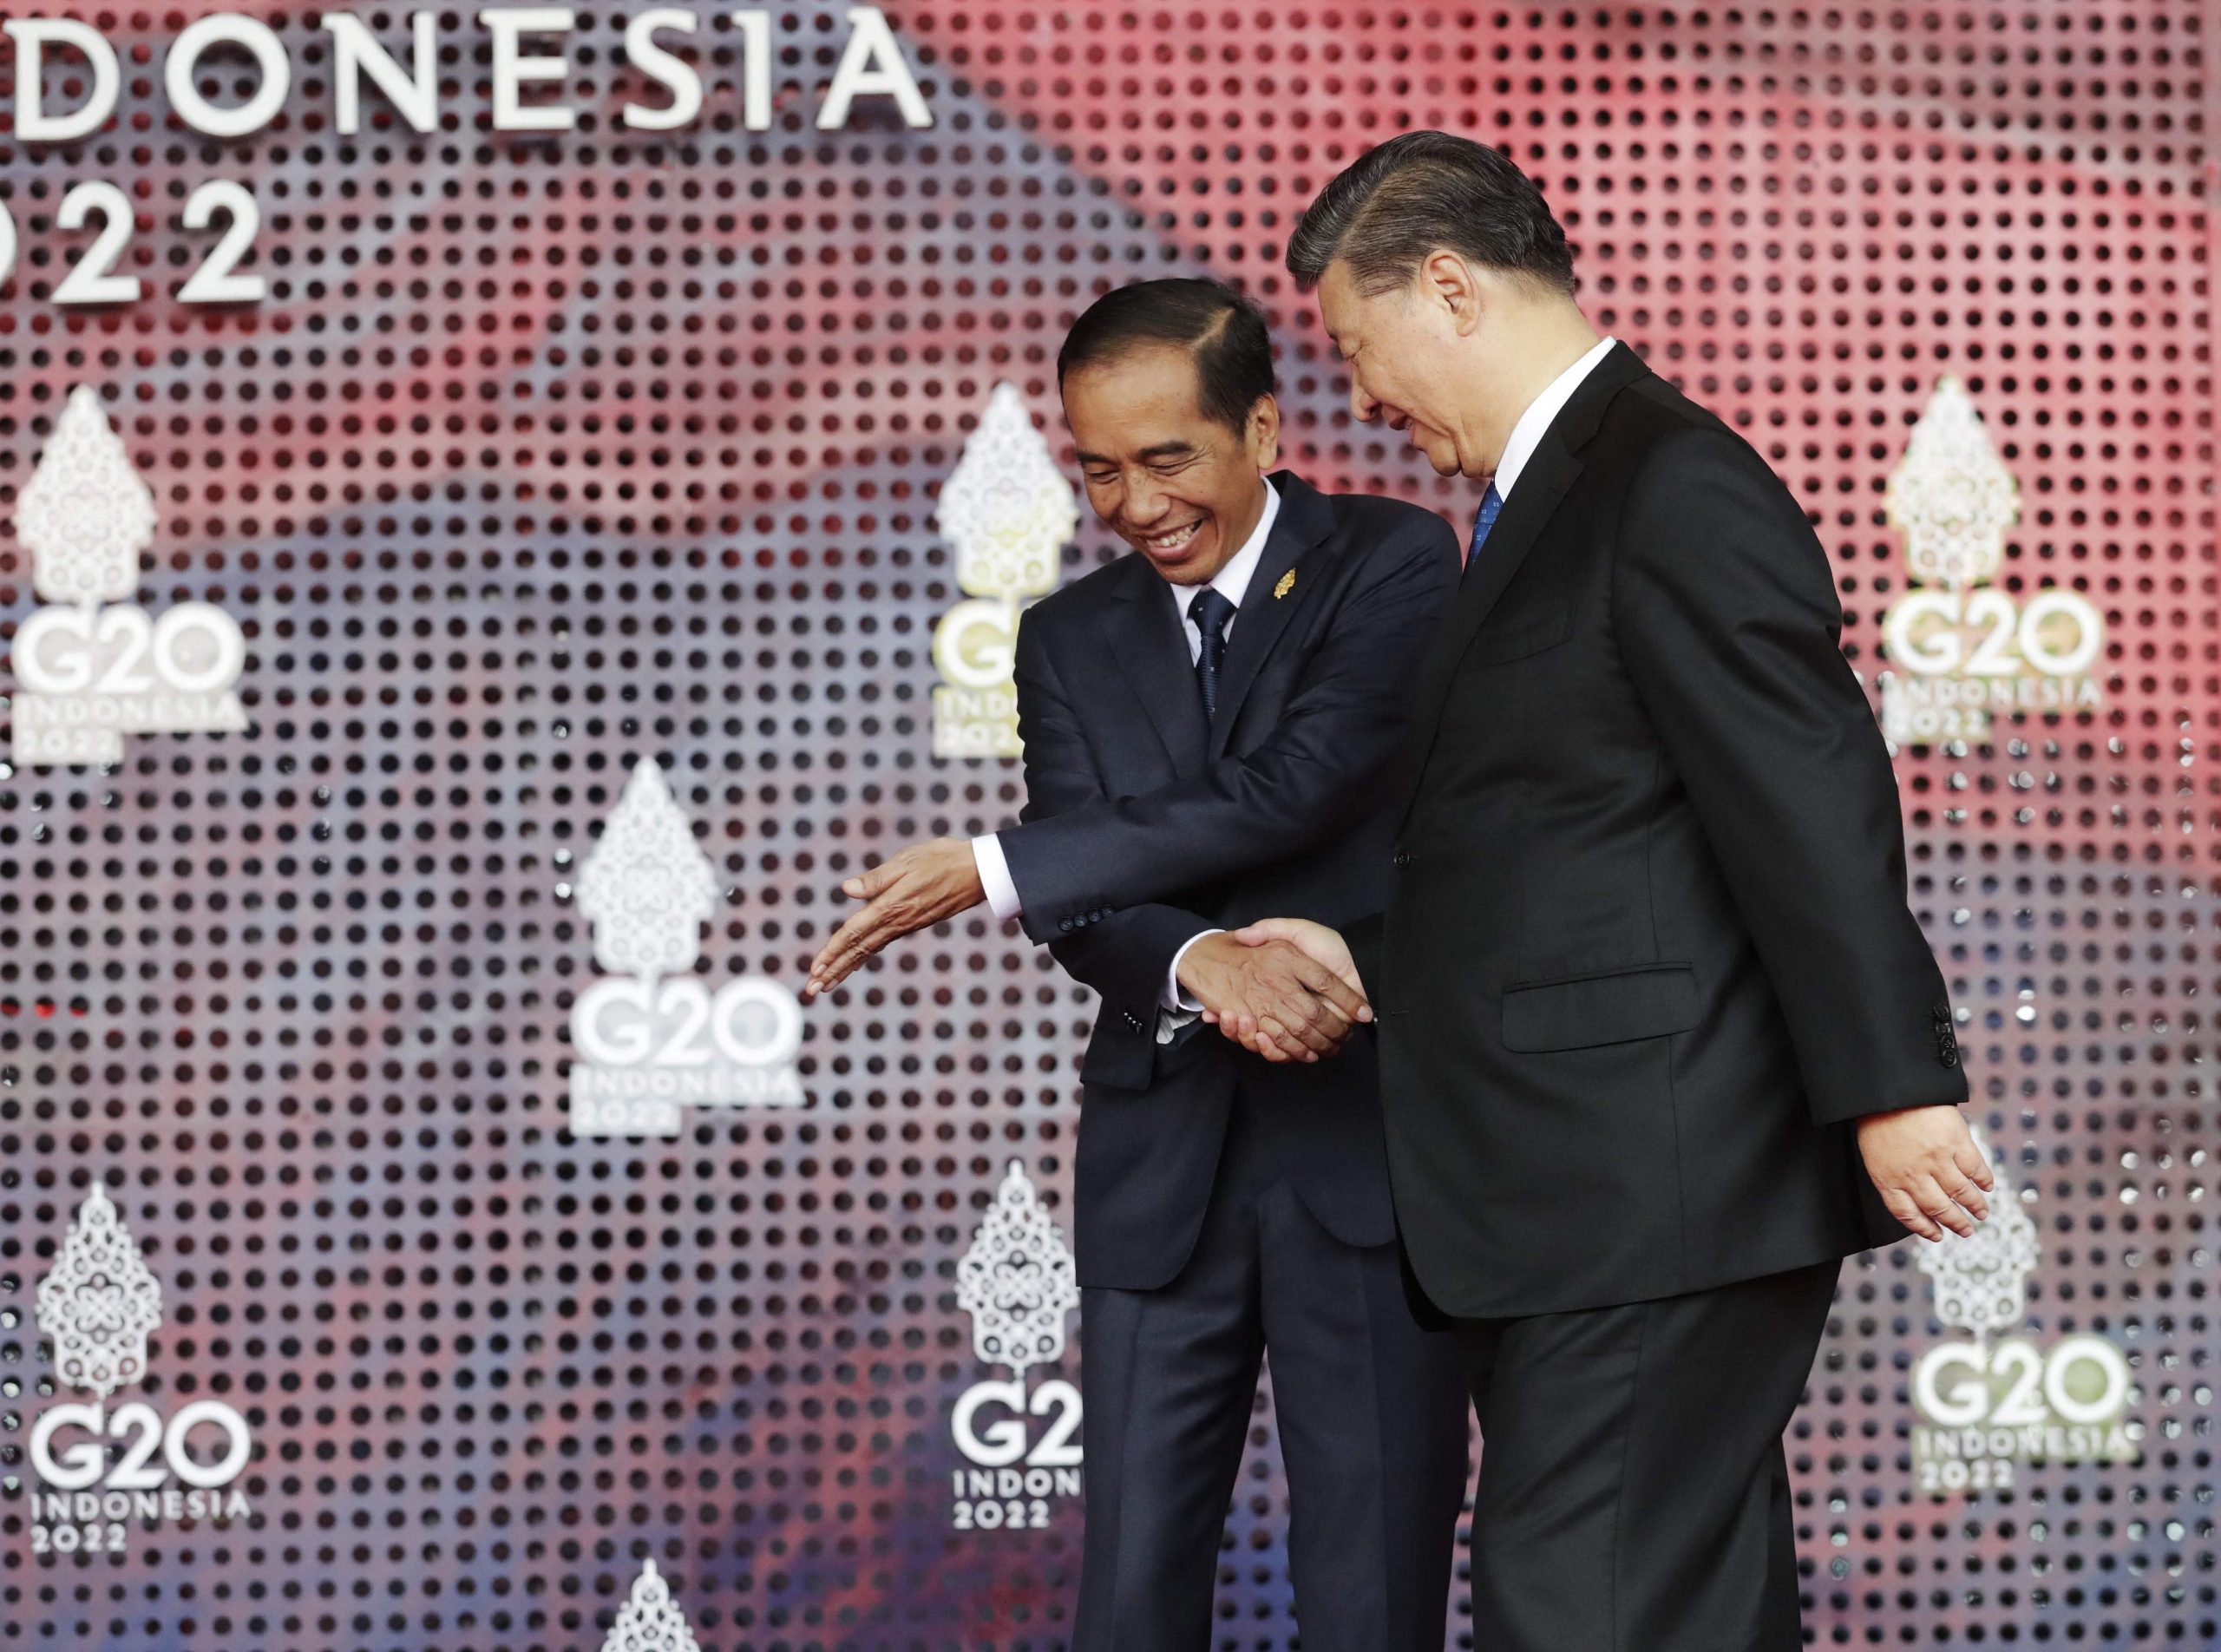 G20峇厘峰会开幕 印尼总统吁富国齐力协助世界经济复苏